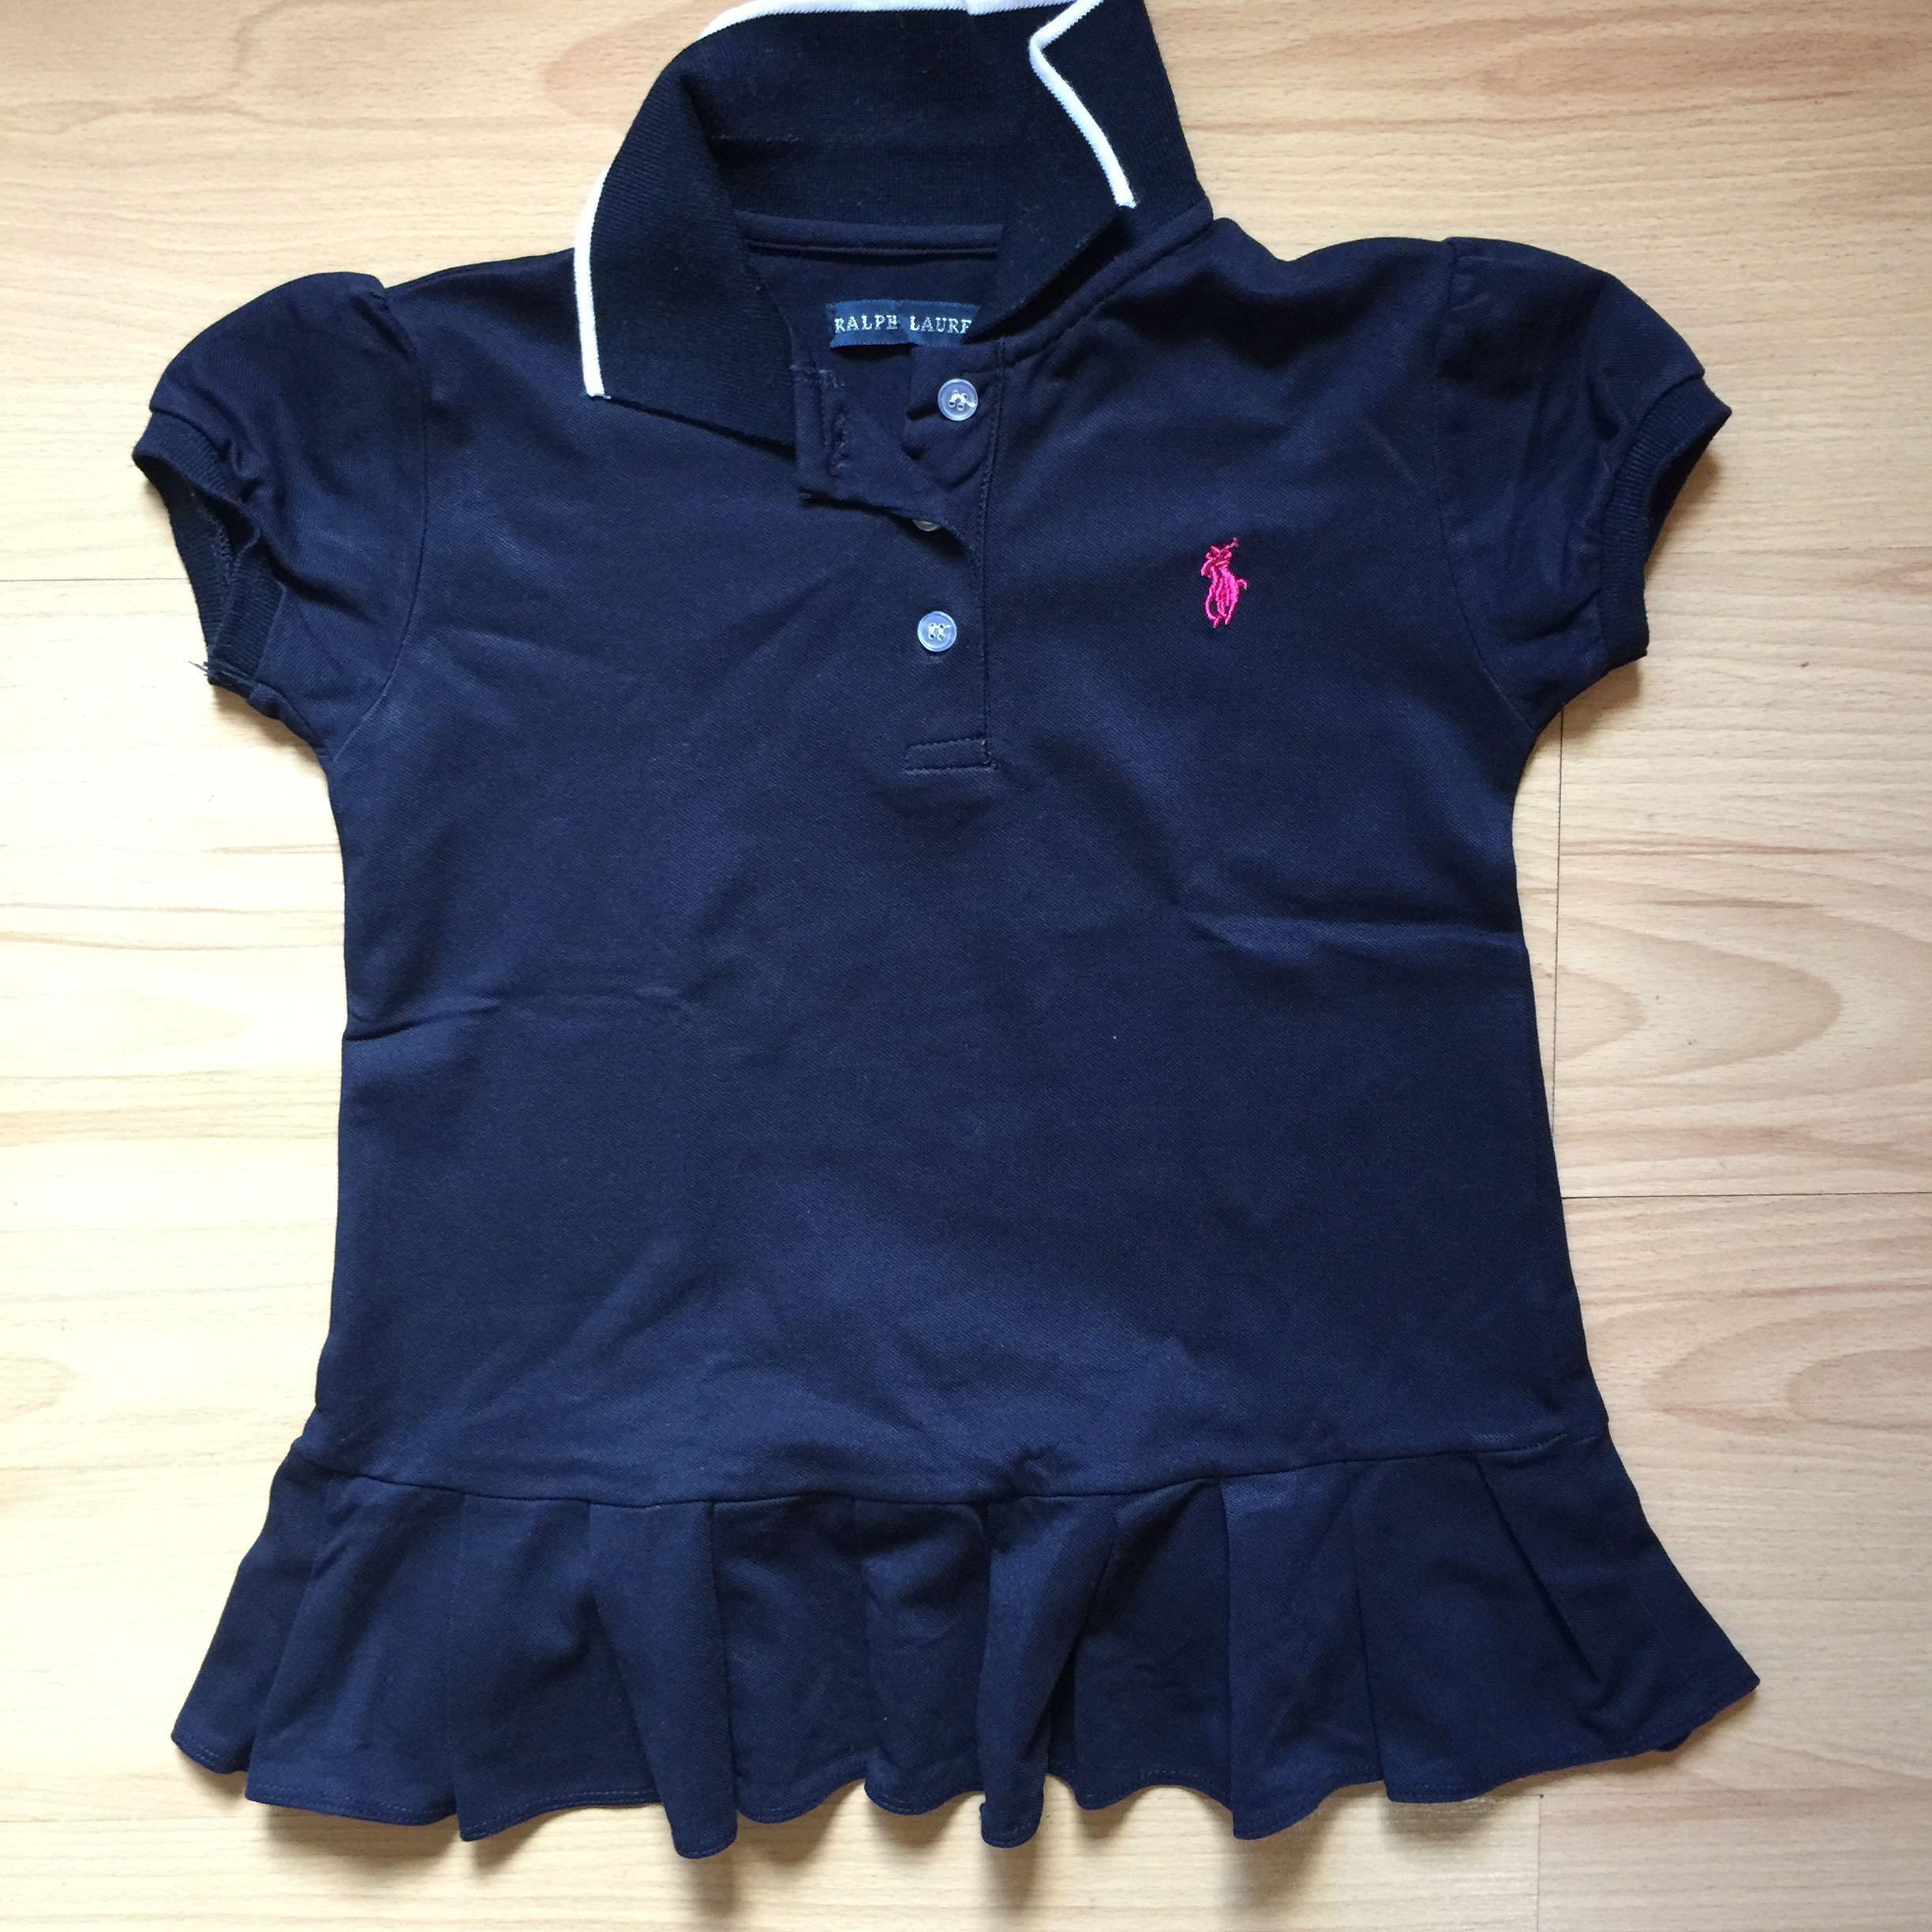 Old Ralph Lauren Logo - Ralph Lauren Polo Shirt Fits 7 8yrs Old, Babies & Kids, Girls